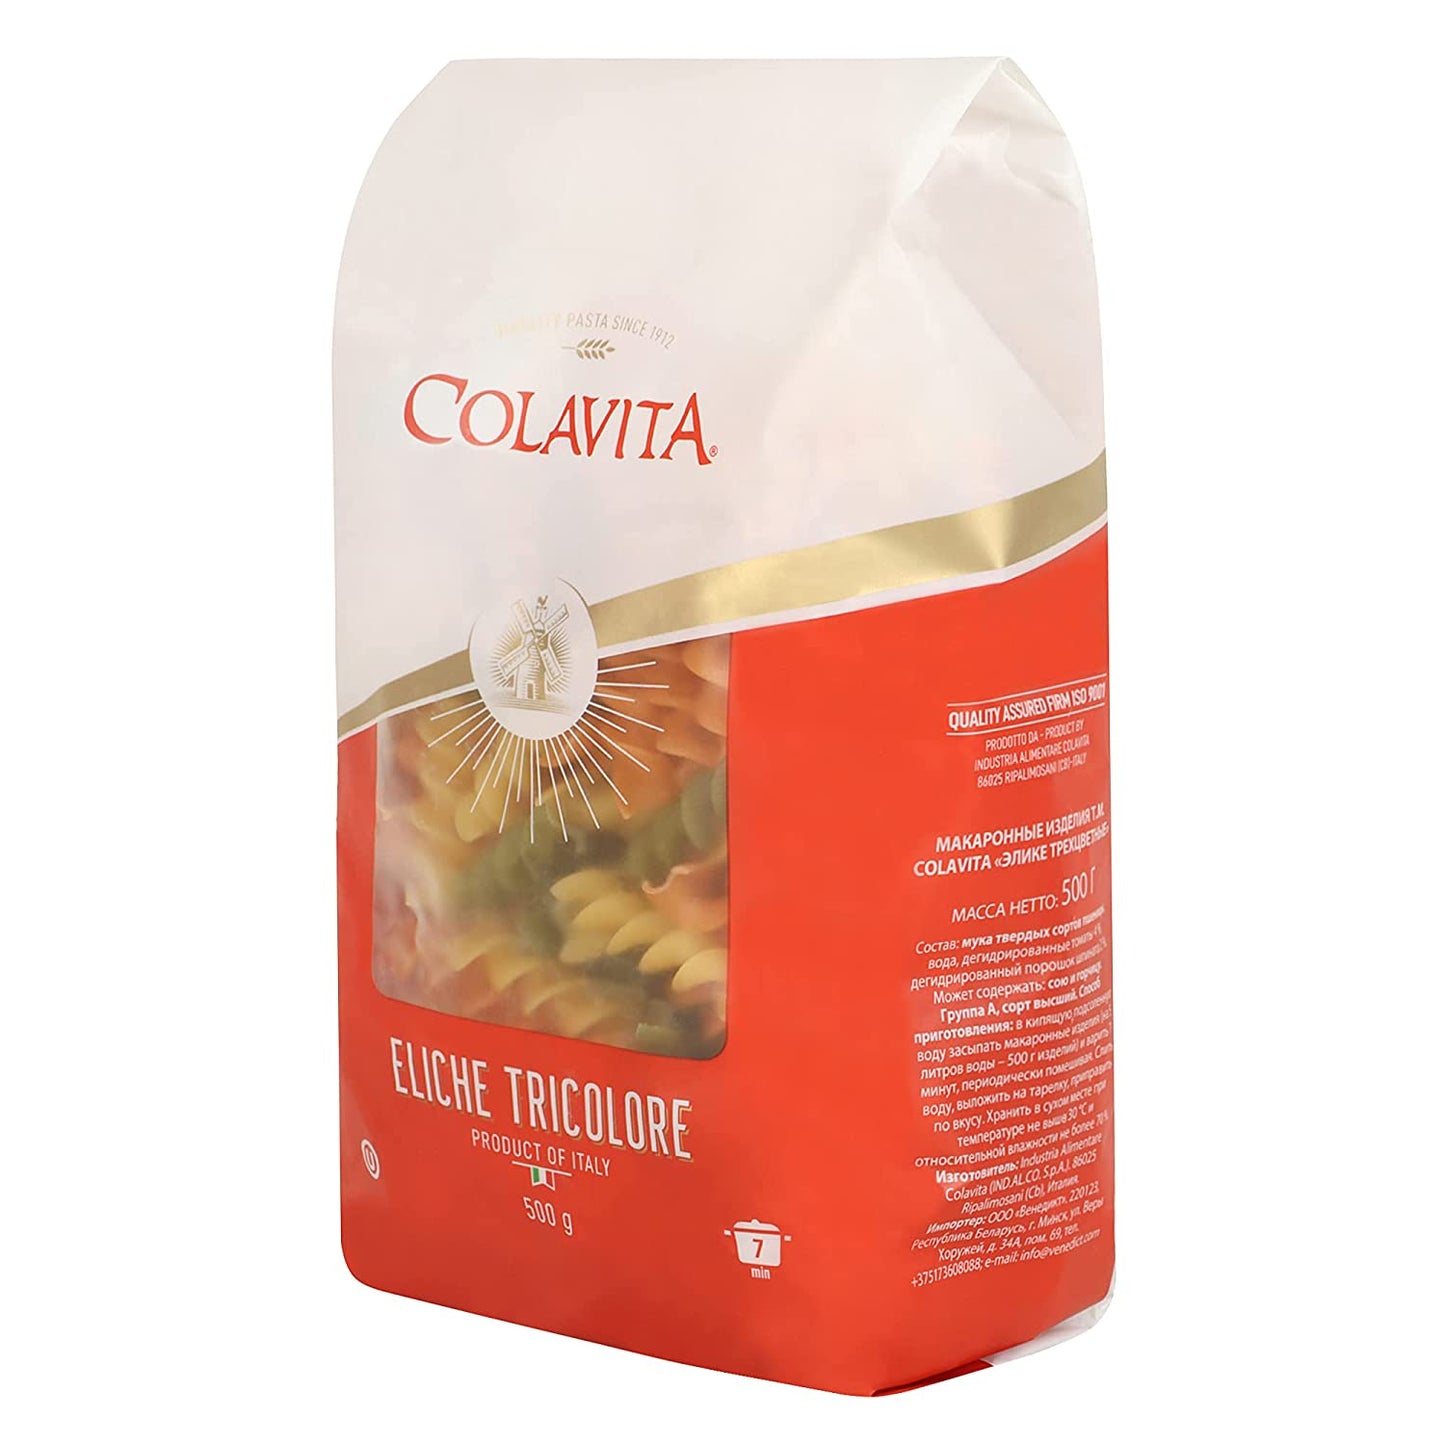 
                  
                    Colavita Eliche Tricolore Pasta 500g (Durum Wheat Pasta)
                  
                